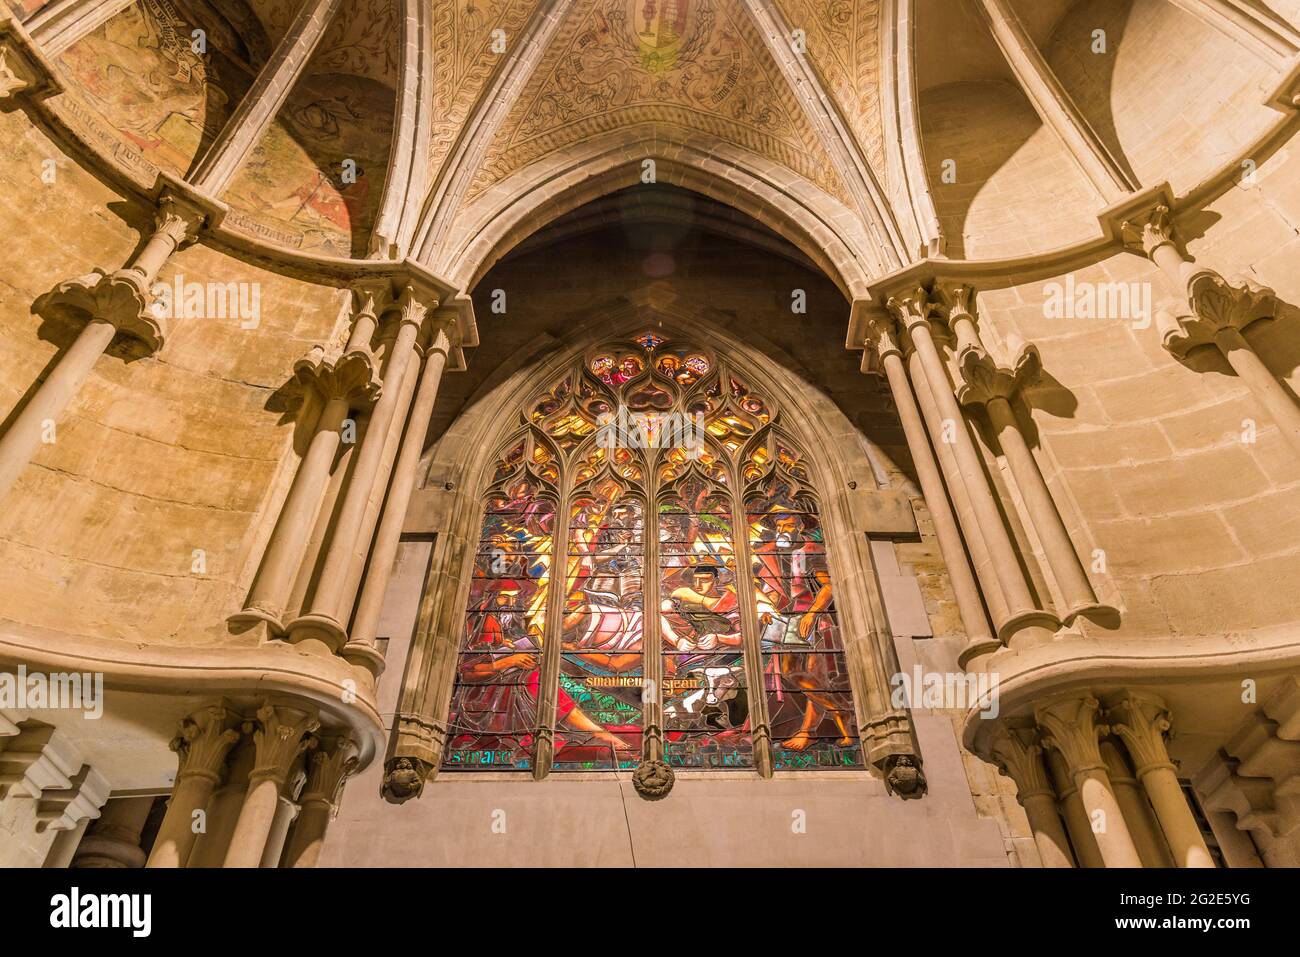 LOSANNA, SVIZZERA - 10 OTTOBRE 2020: Cattedrale di Notre Dame di Losanna interno, una chiesa situata nella città di Losanna, nel cantone di Vaud Foto Stock